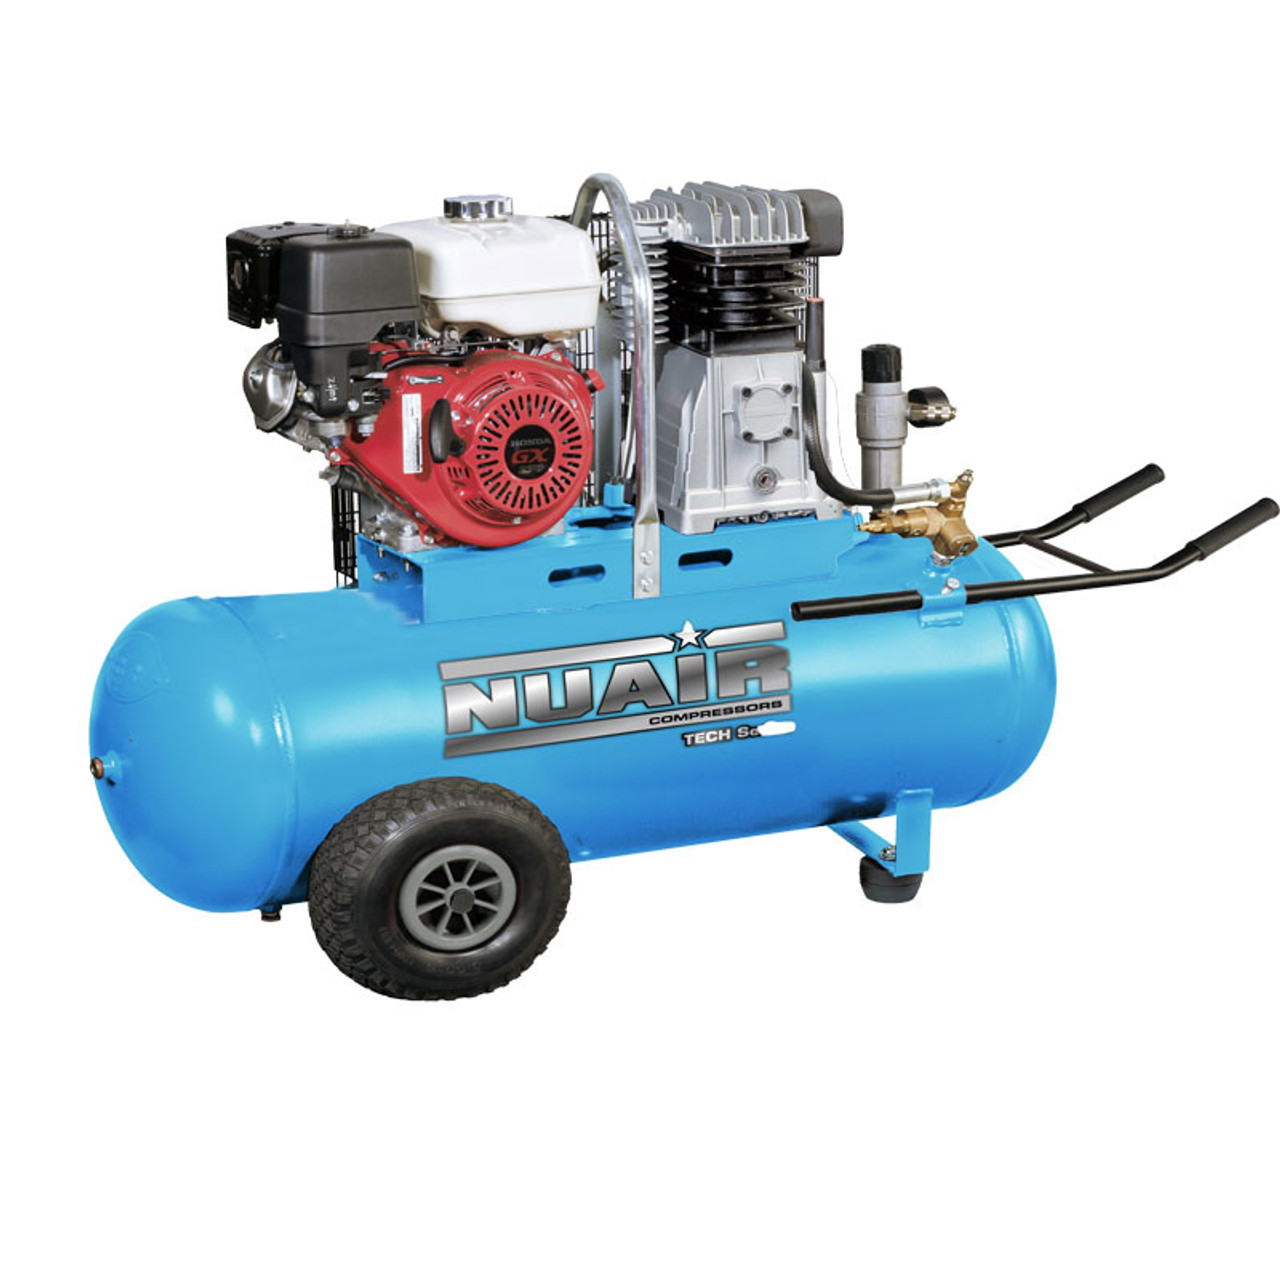 NUAIR 150 litre Engine Series Petrol Air Compressor